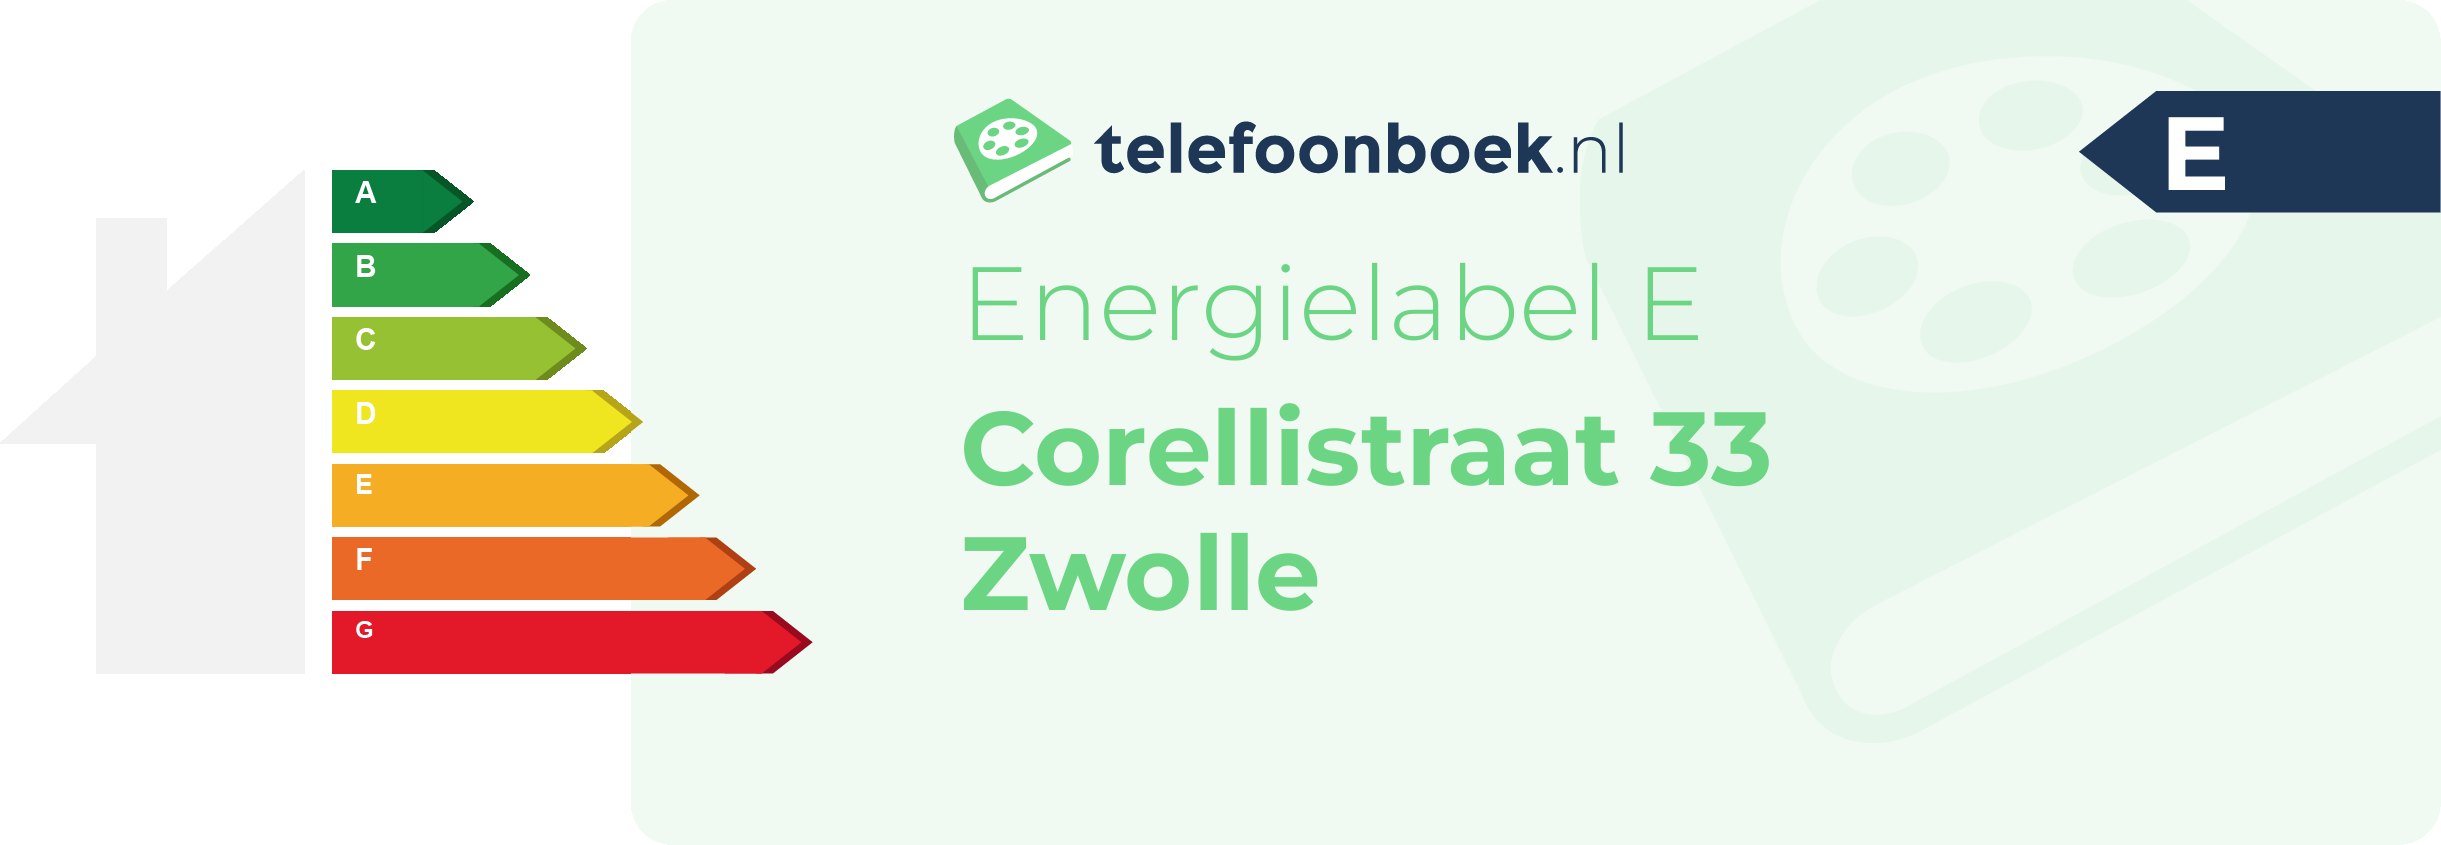 Energielabel Corellistraat 33 Zwolle